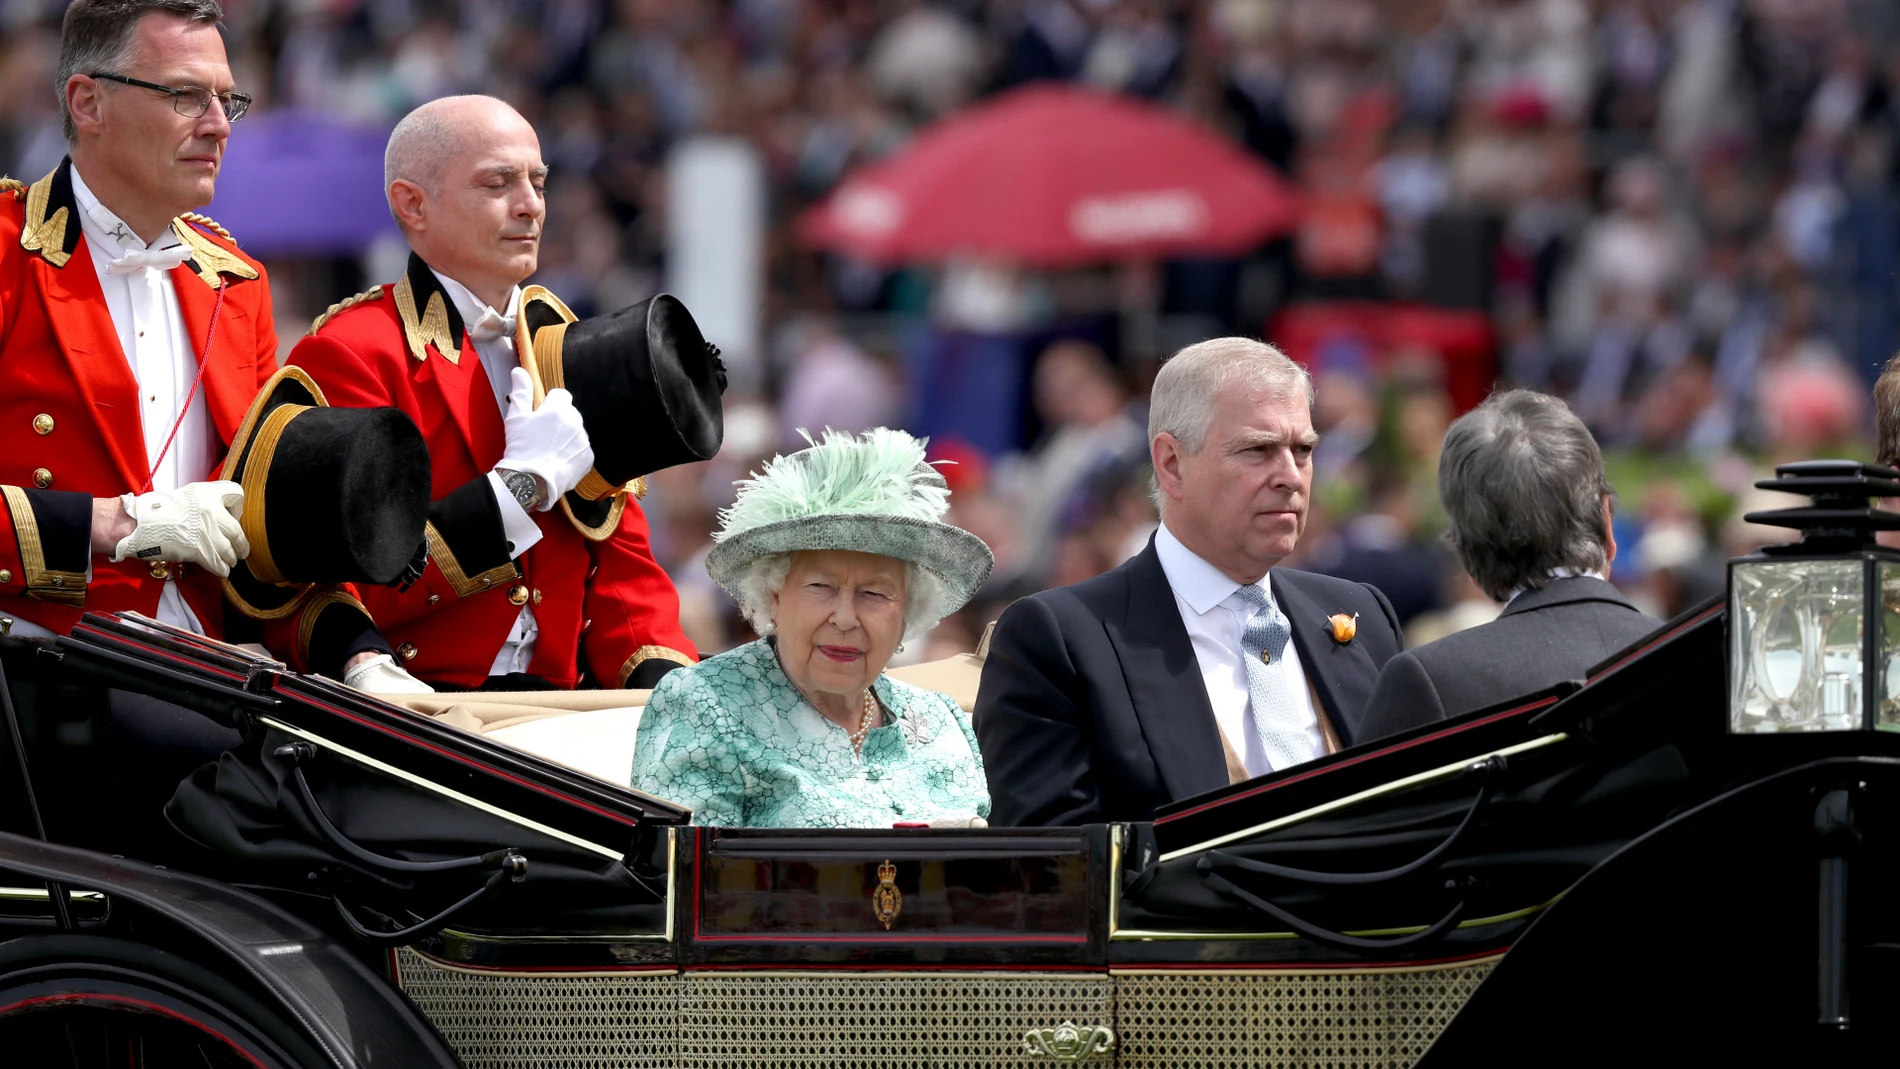 La Reina Isabel II y el príncipe Andrés